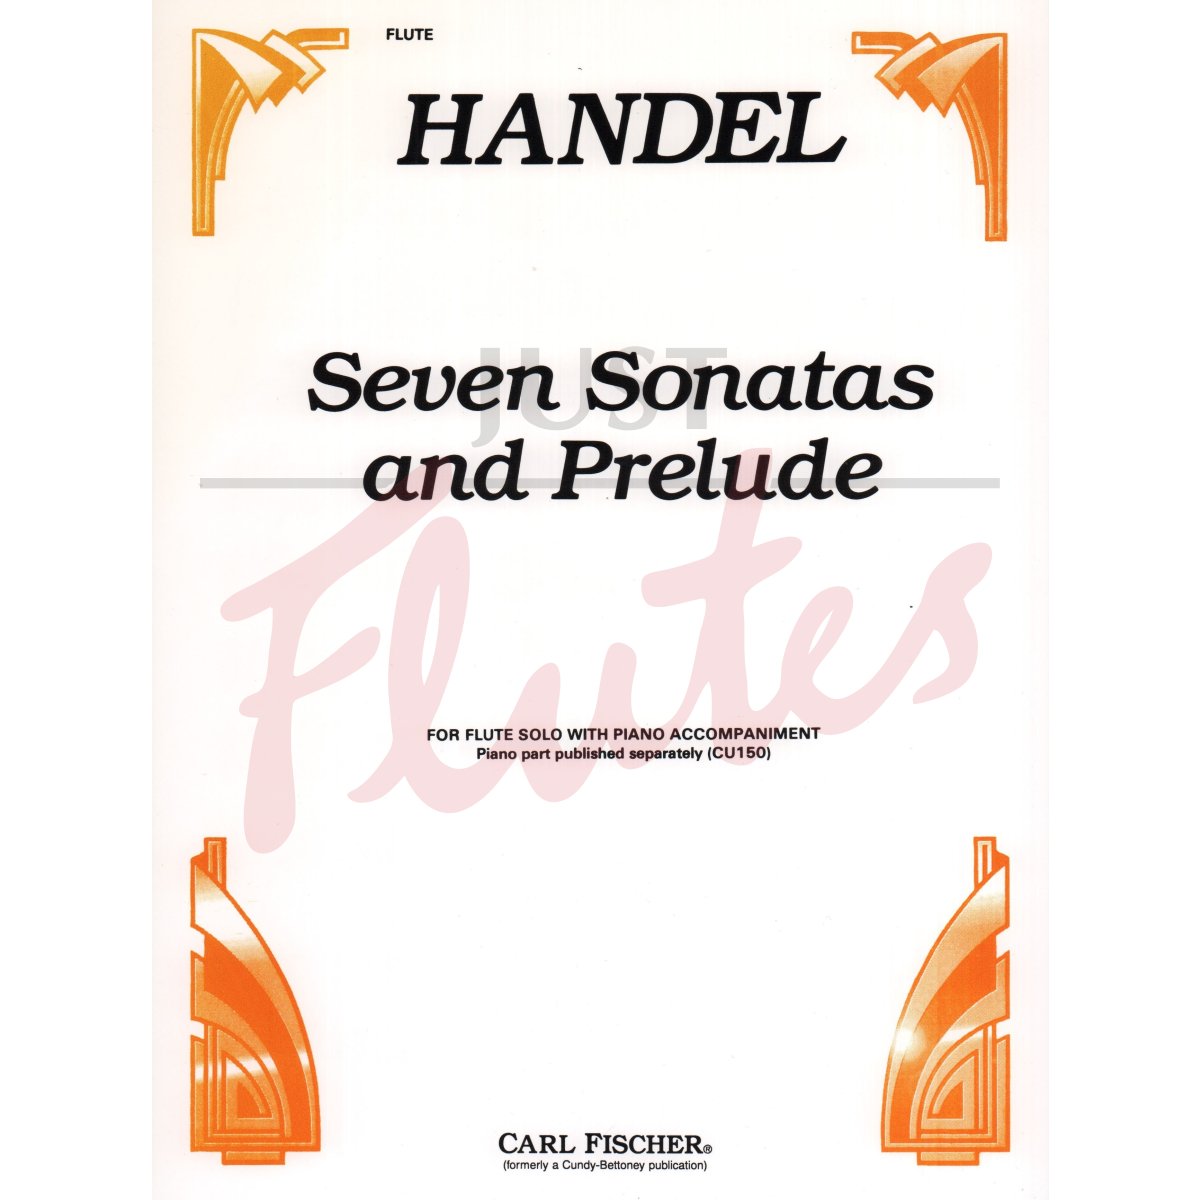 Seven Sonatas and Prelude for Flute